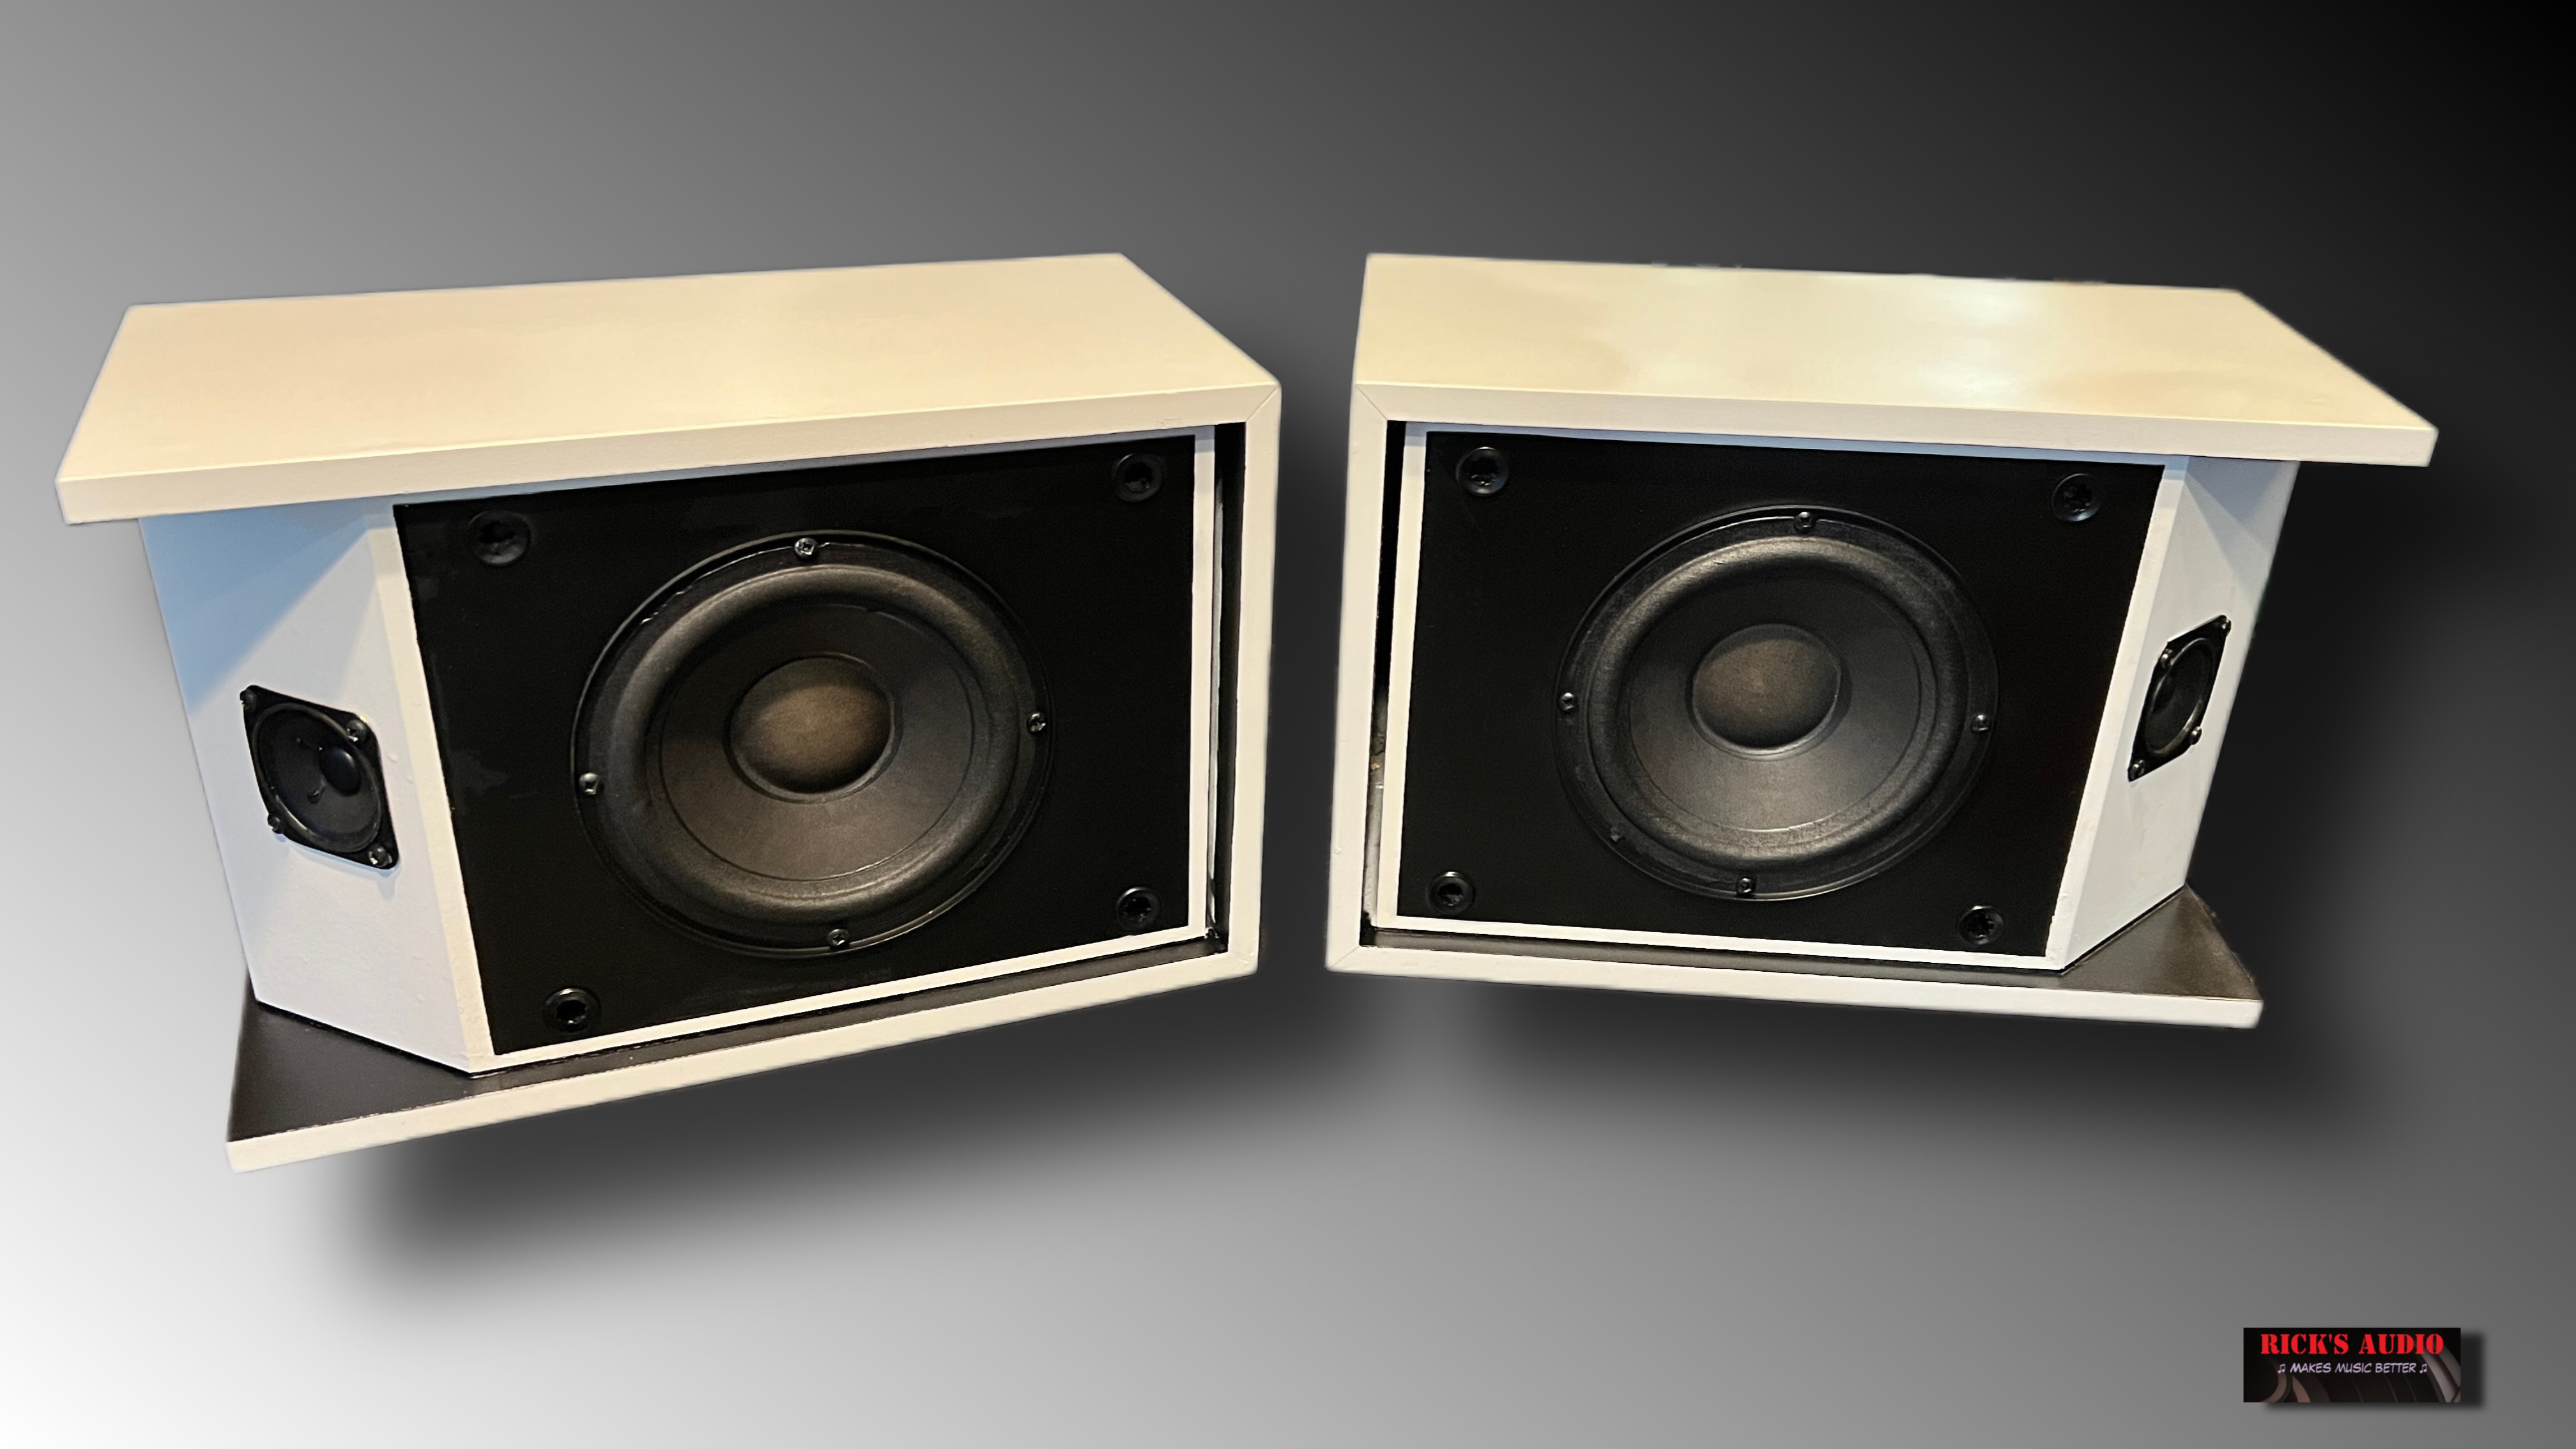 Bose - 201 series 3 - Speaker set - WIT